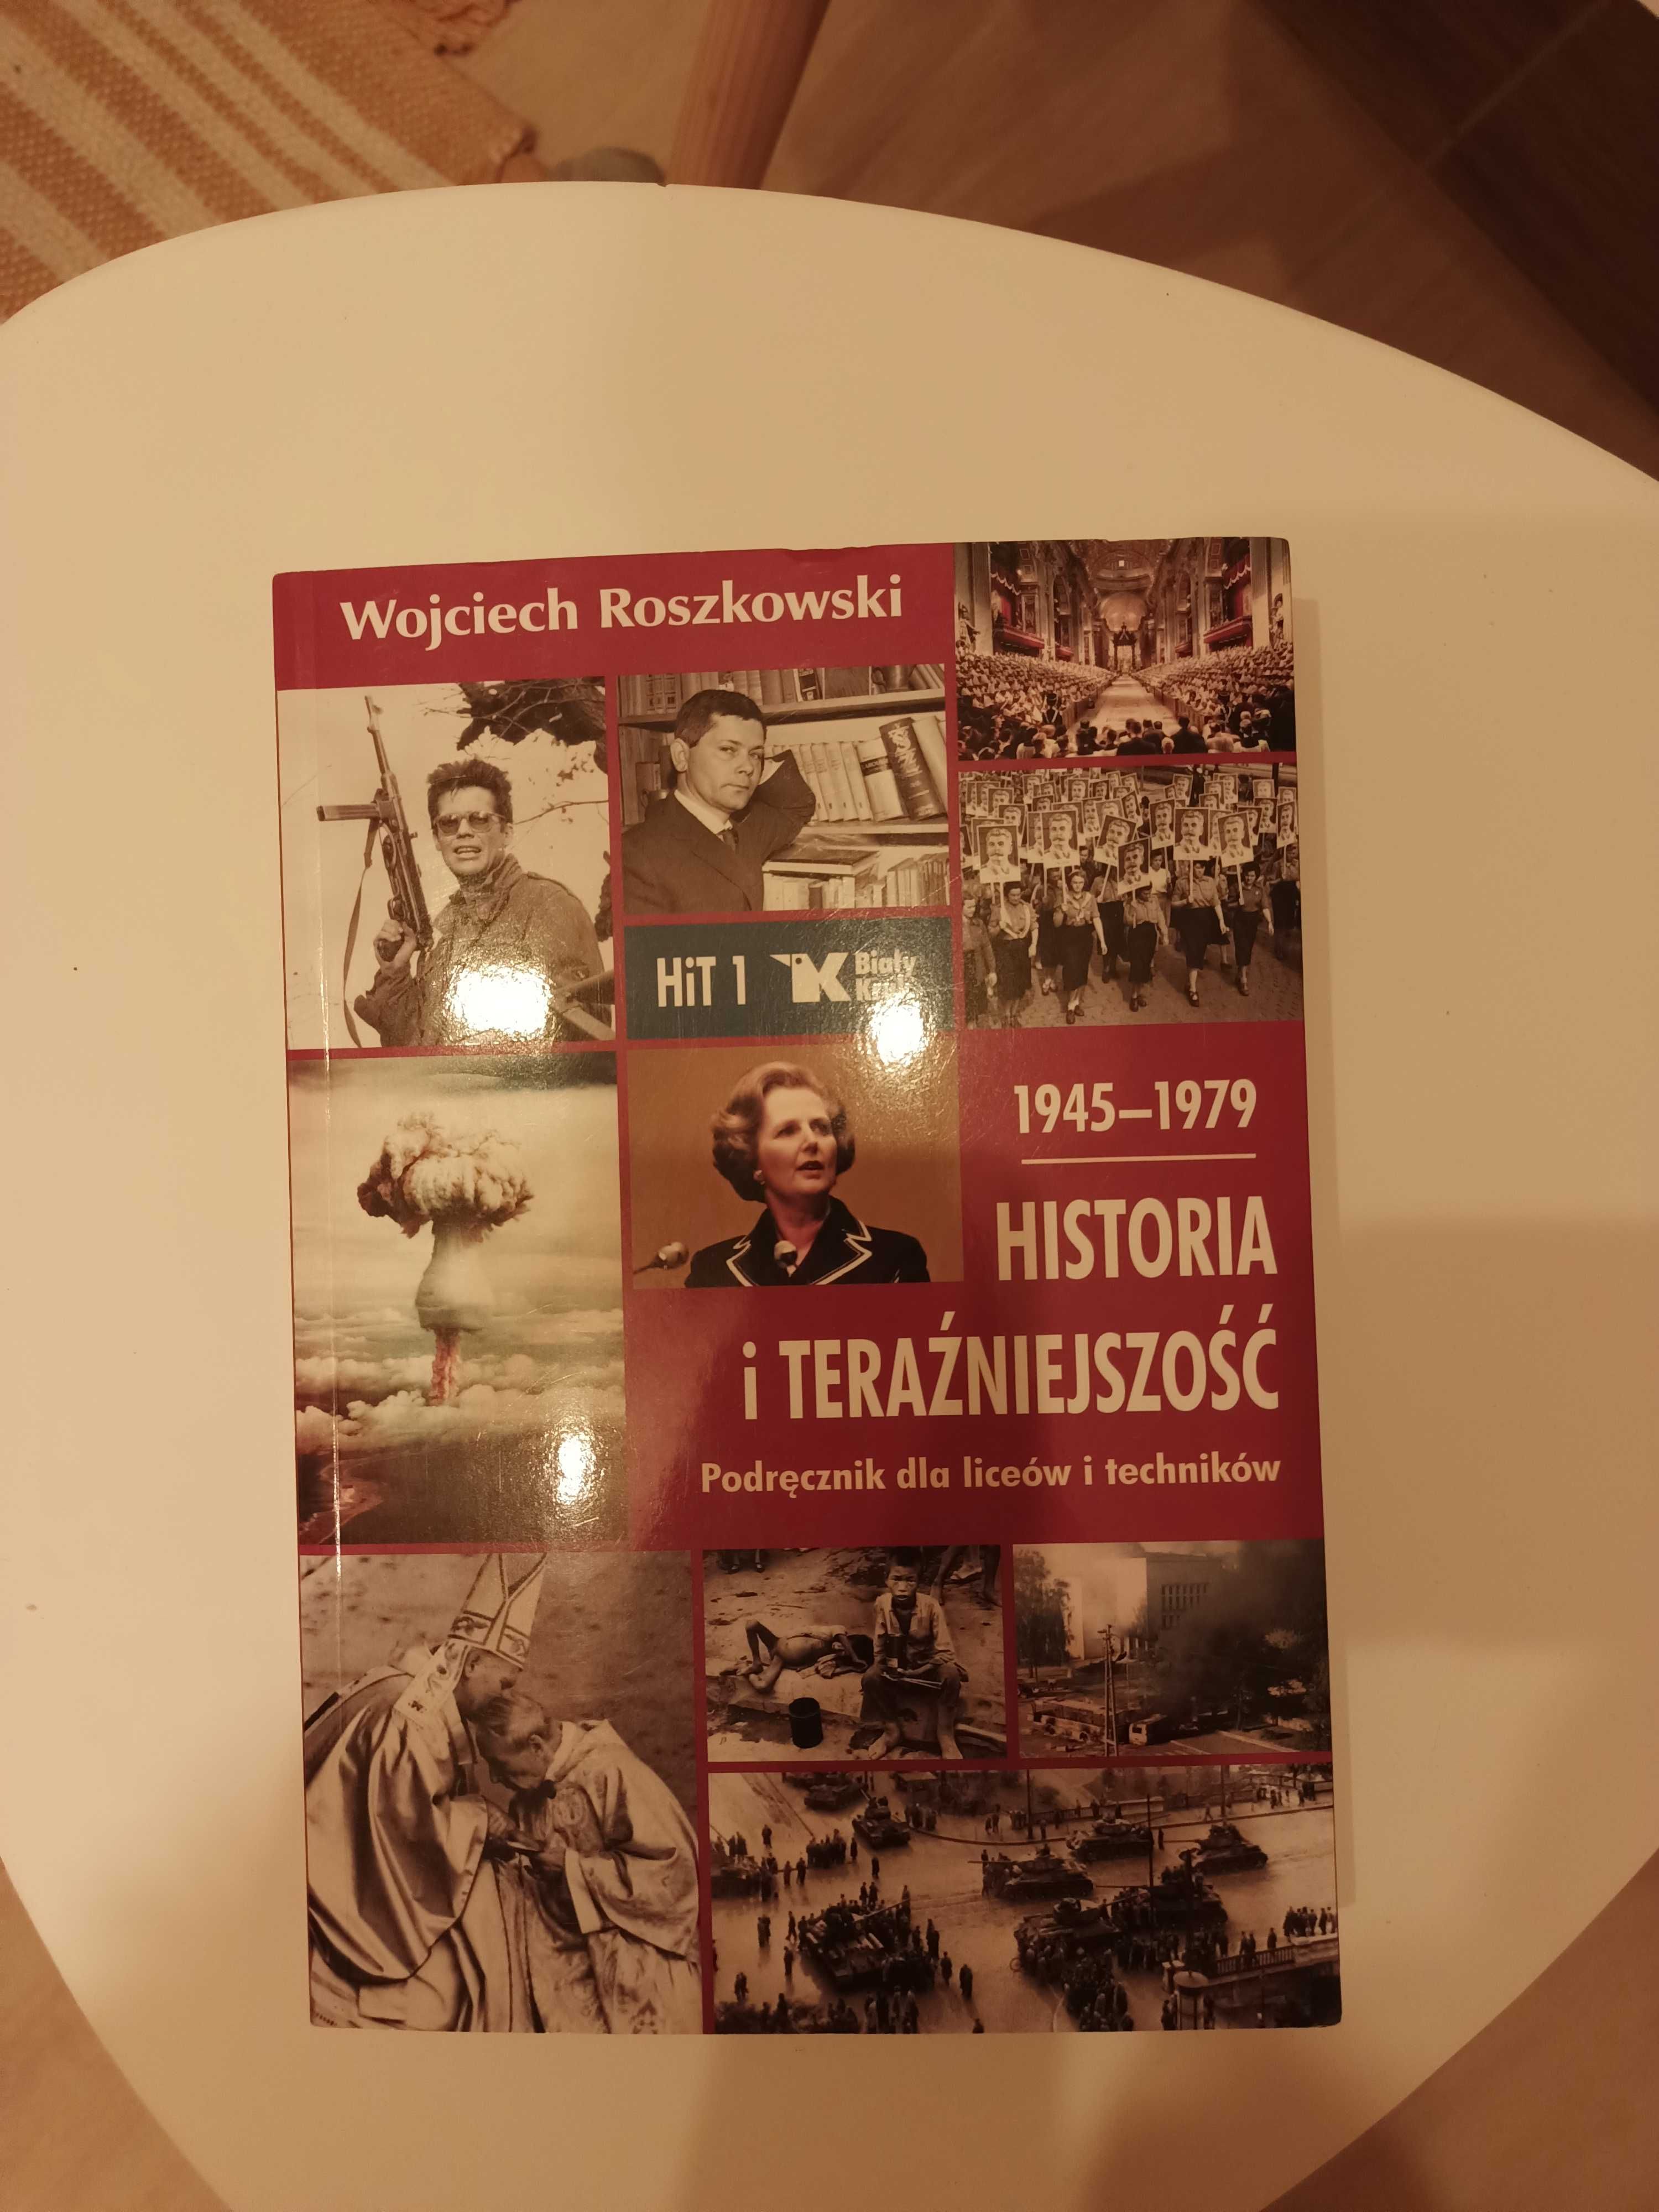 Nowa książka "Historia i teraźniejszość" Wojciecha Roszkowskiego